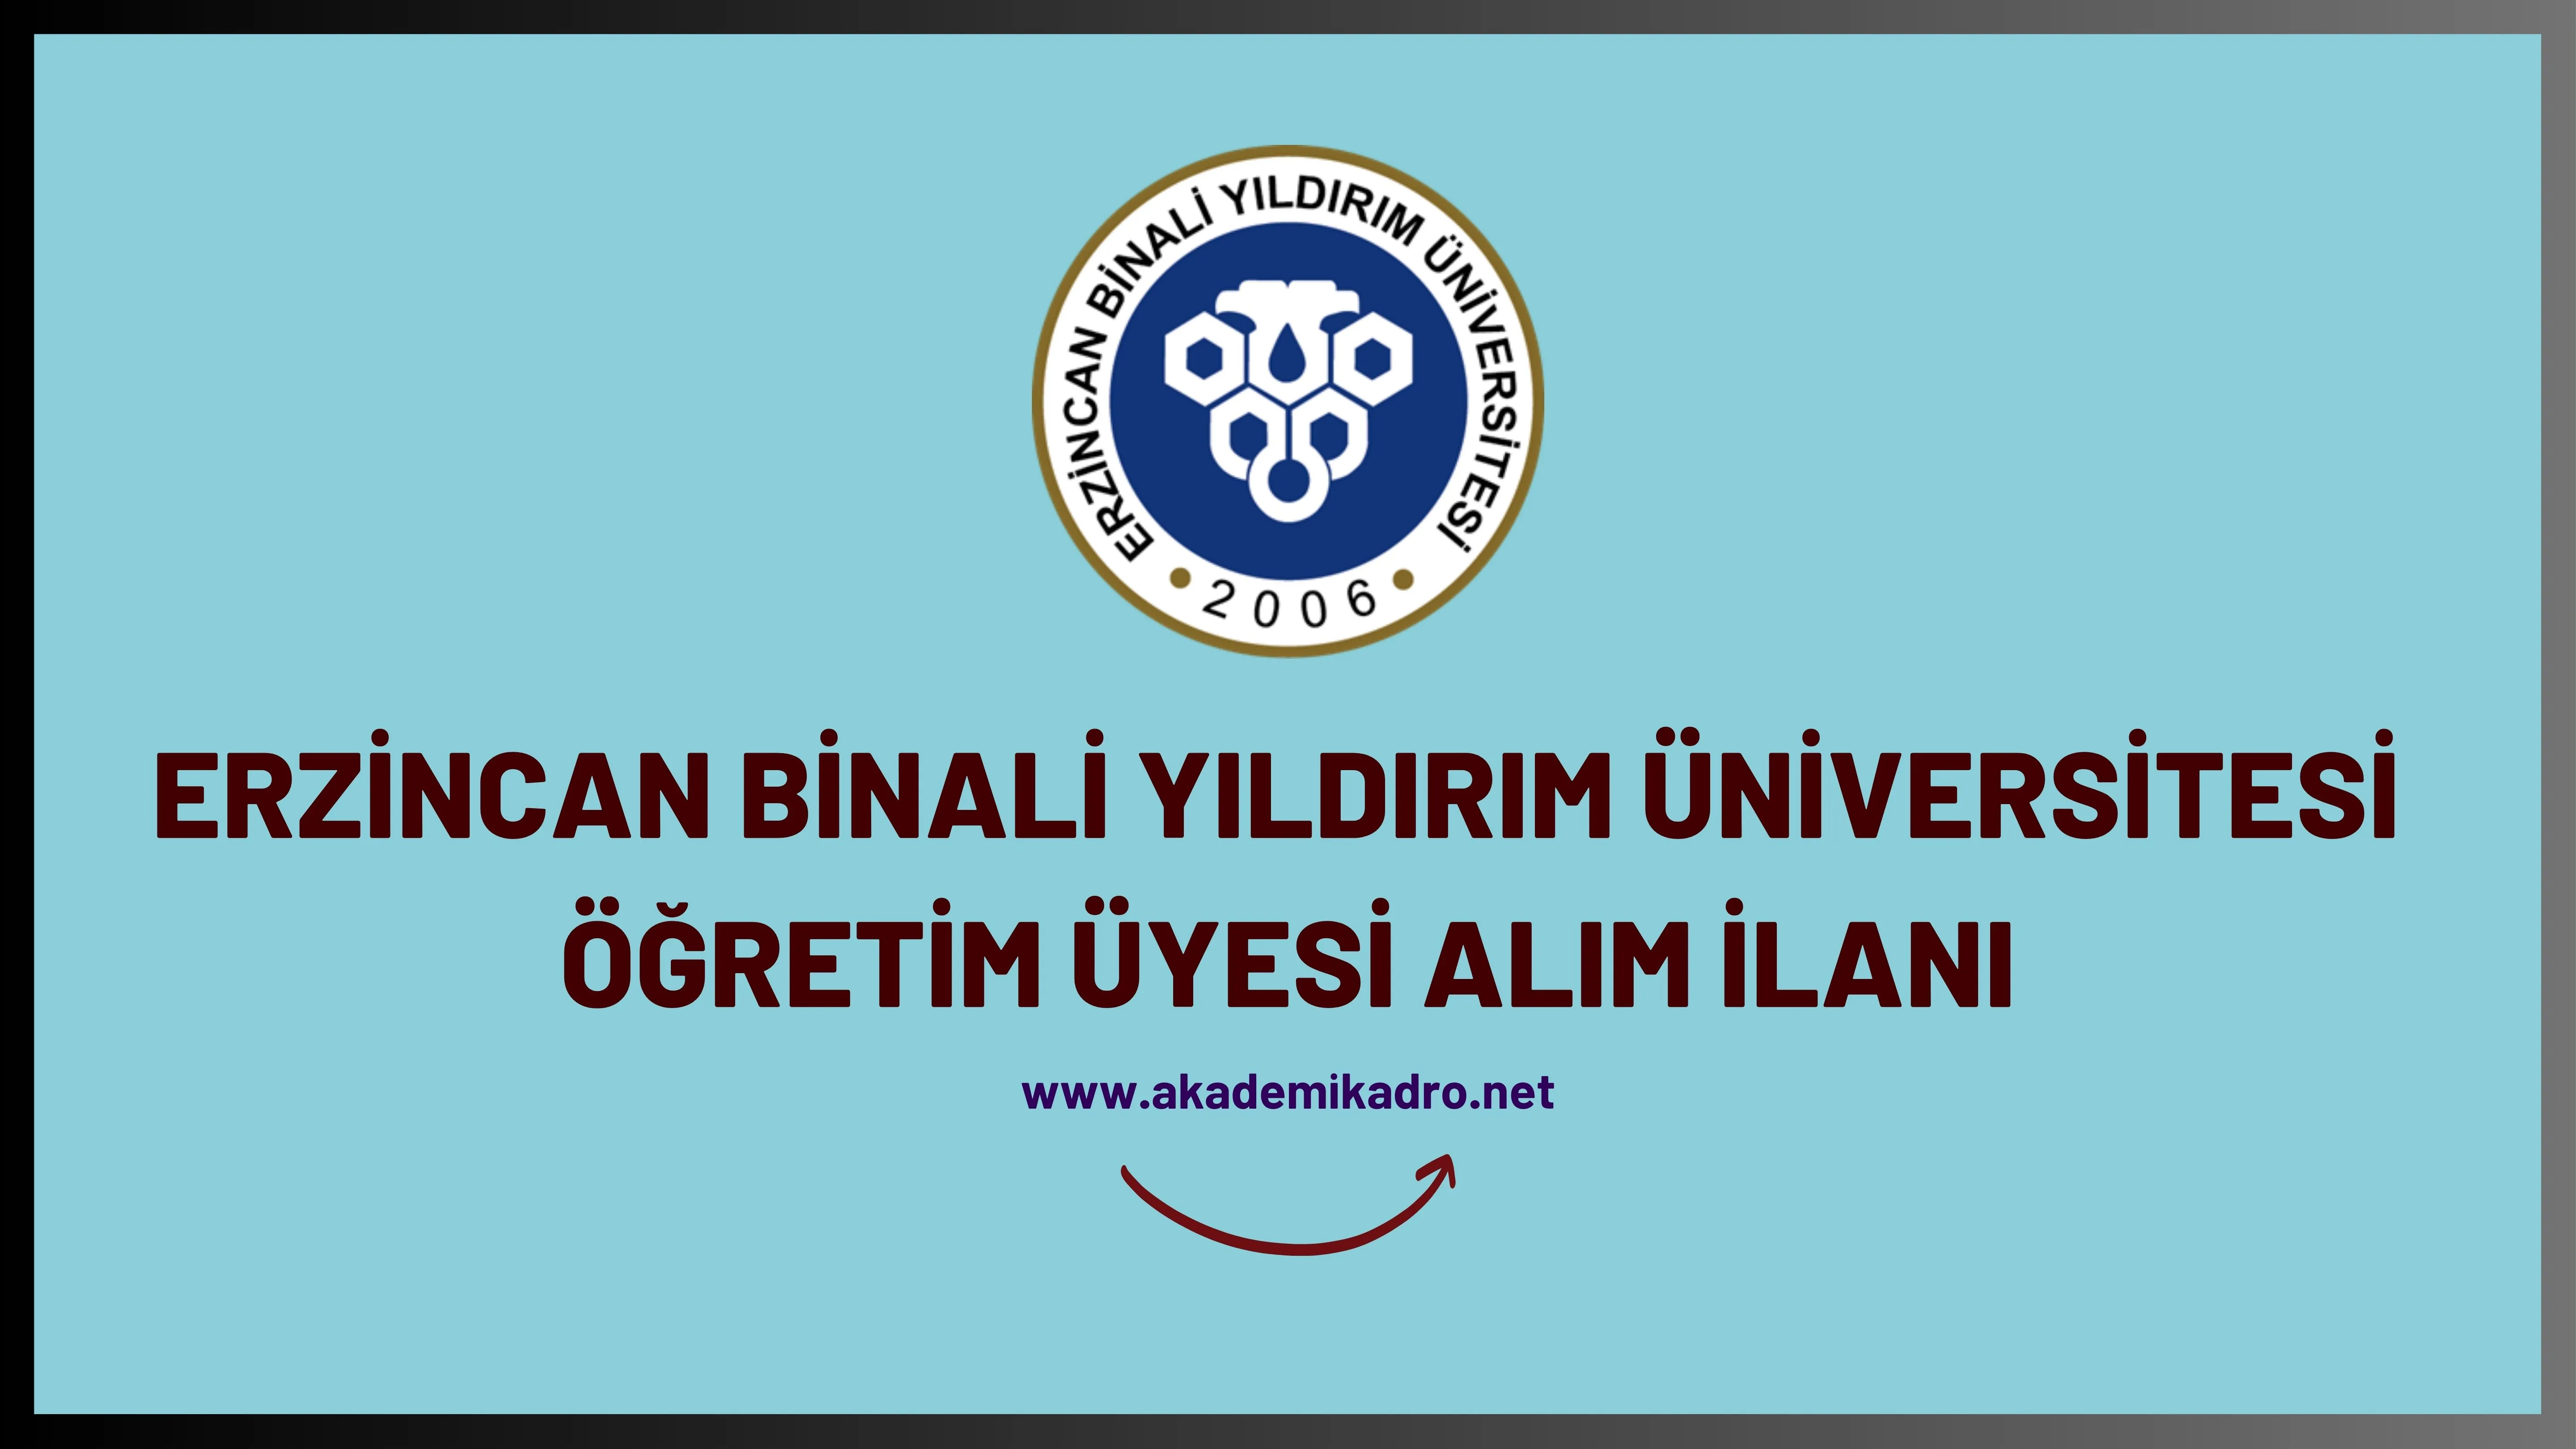 Erzincan Binali Yıldırım Üniversitesi birçok alandan 25 öğretim üyesi alacak.